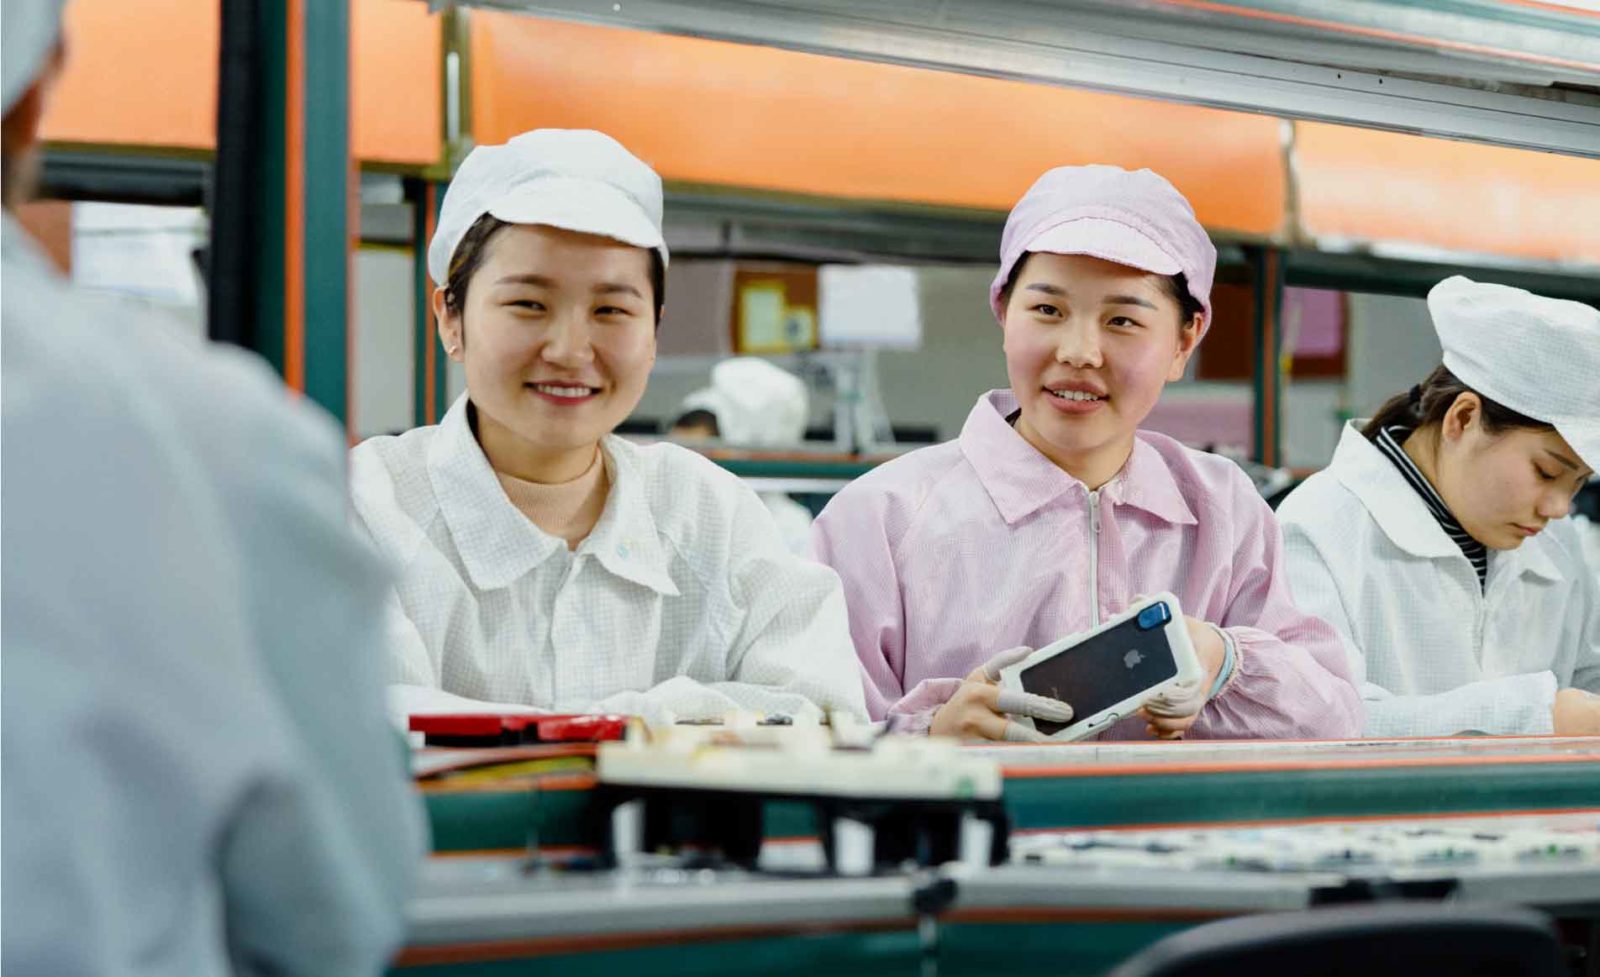 Fornitori Apple coinvolti nei rapporti sui lavori forzati uiguri in Cina